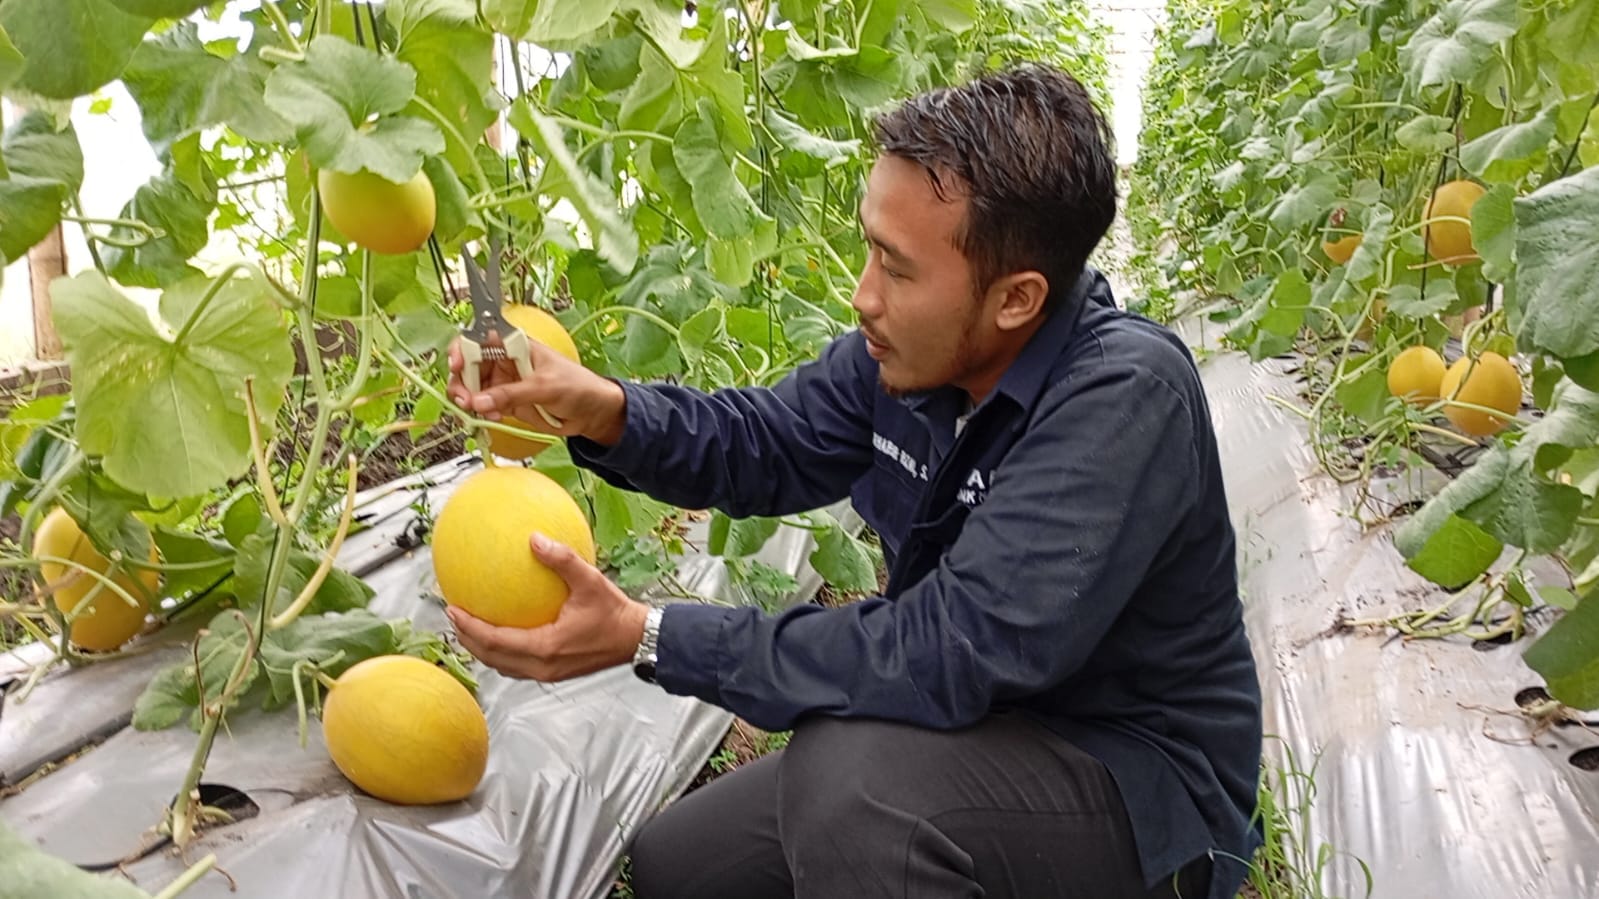 Wisata Alternatif di Wilayah Slawi, Petik Buah Melon di Agro Wisata Kalisapu